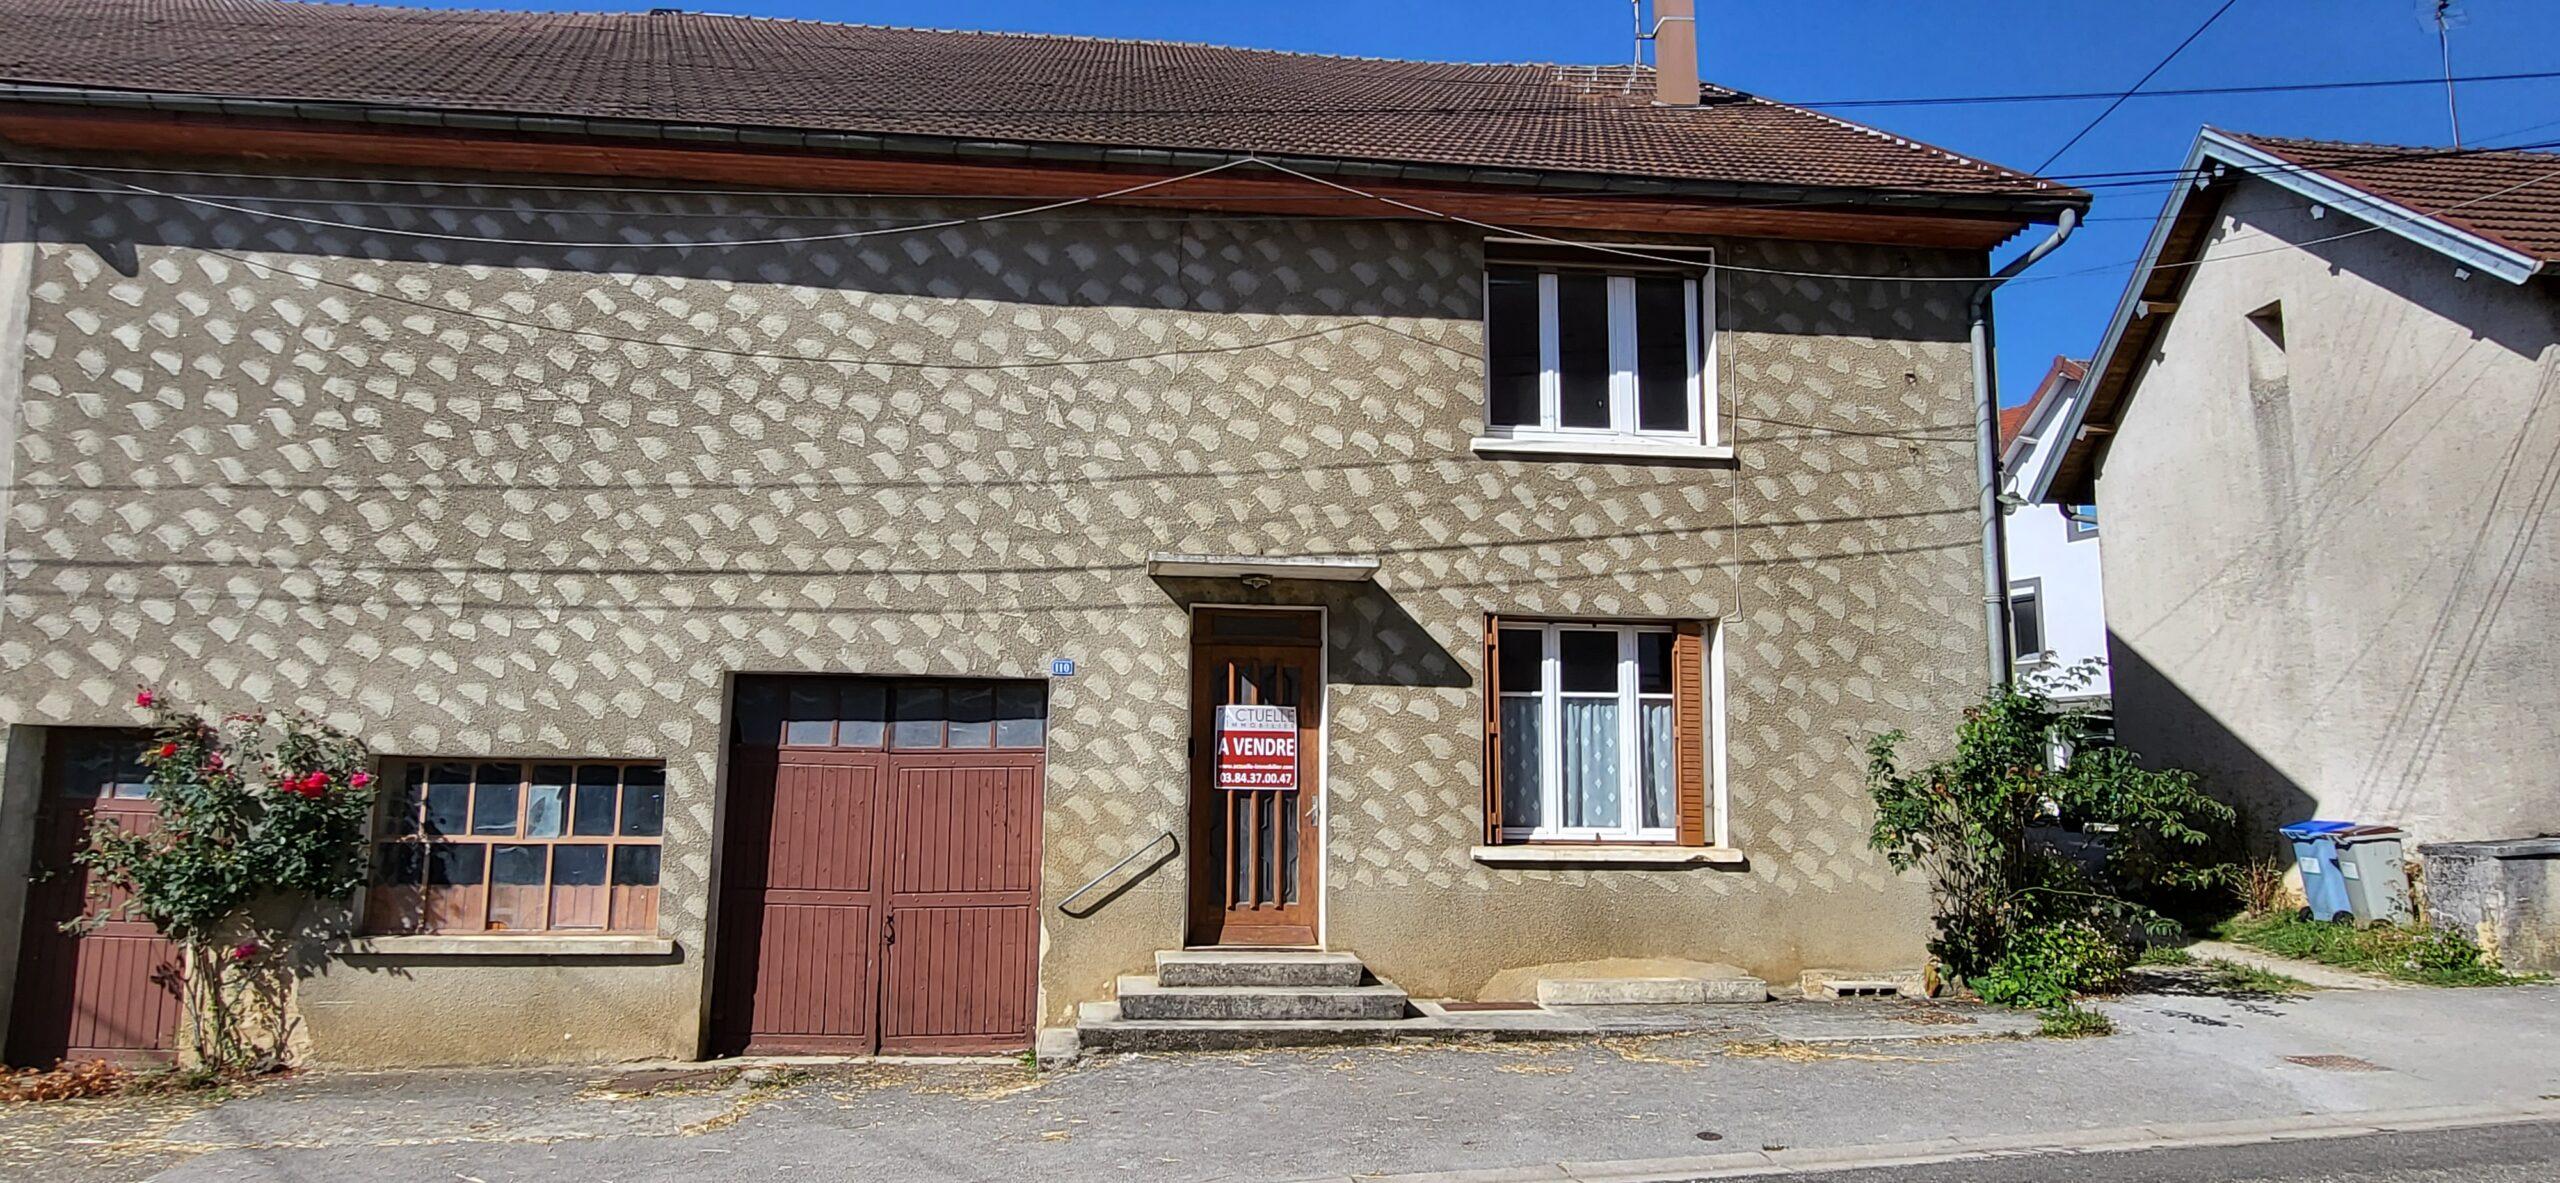 Vente maison secteur Poligny